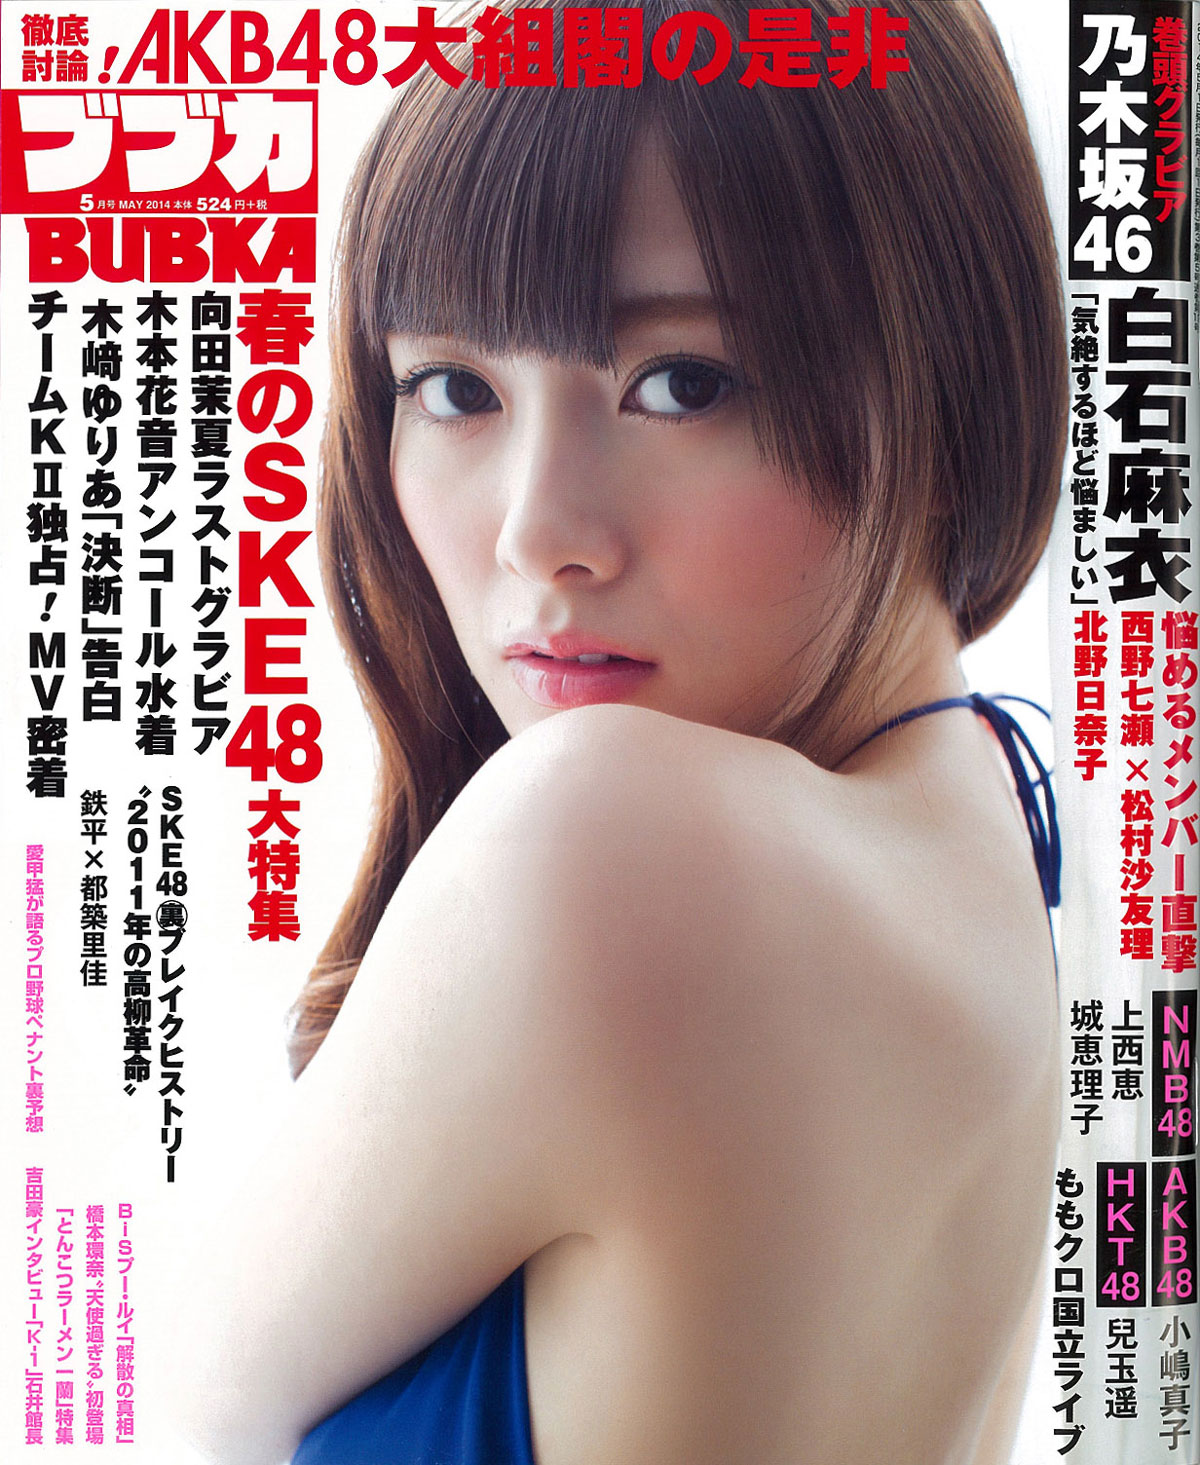 Nogizaka46 Mai Shiraishi Japanese Bubka Magazine